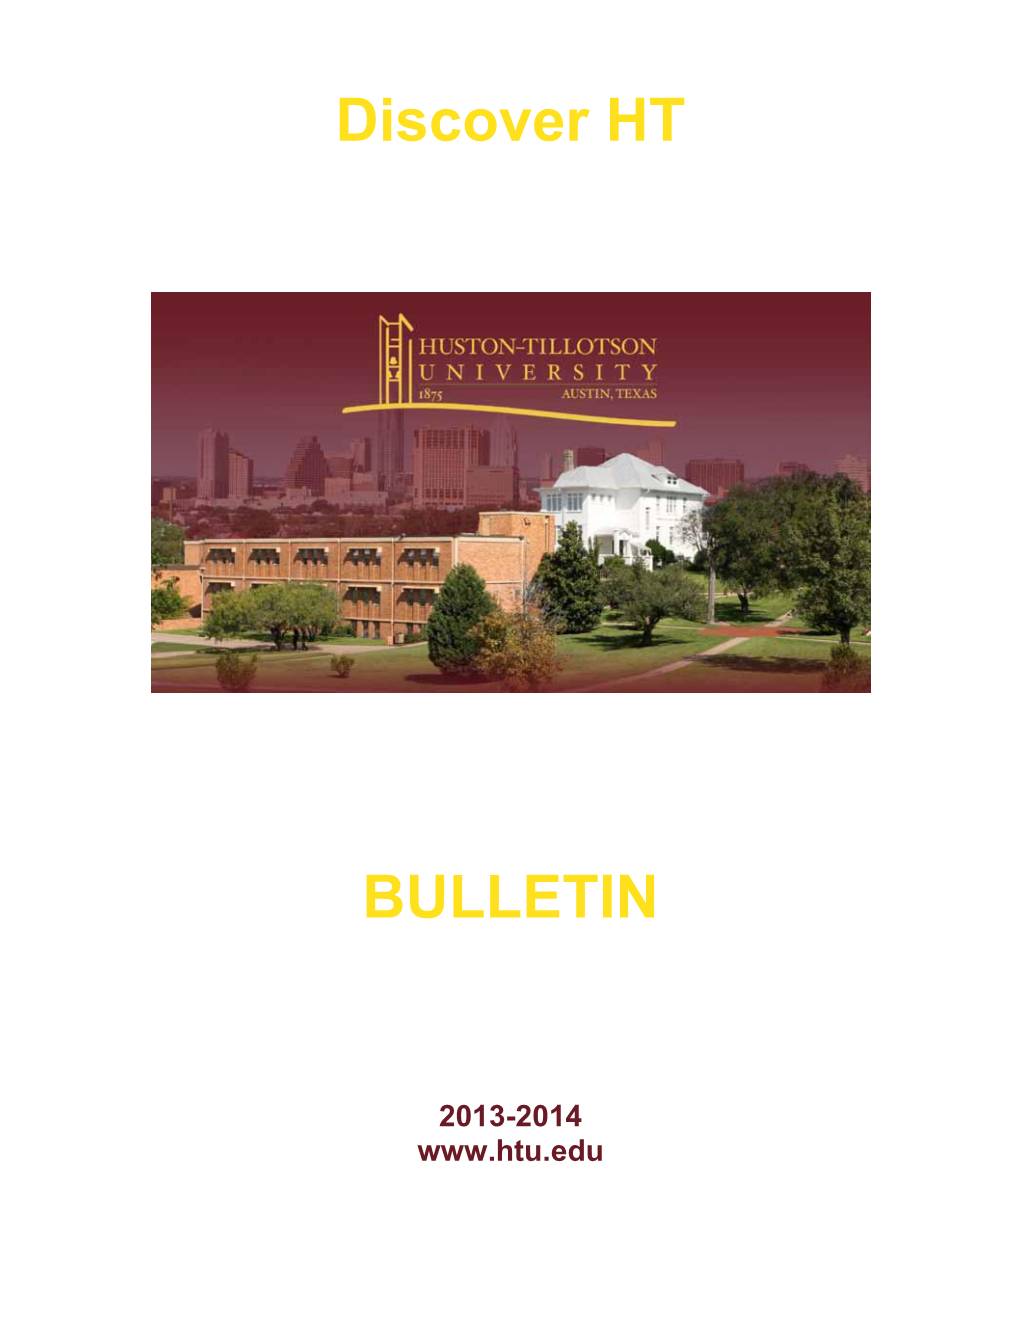 2013-2014 Bulletin